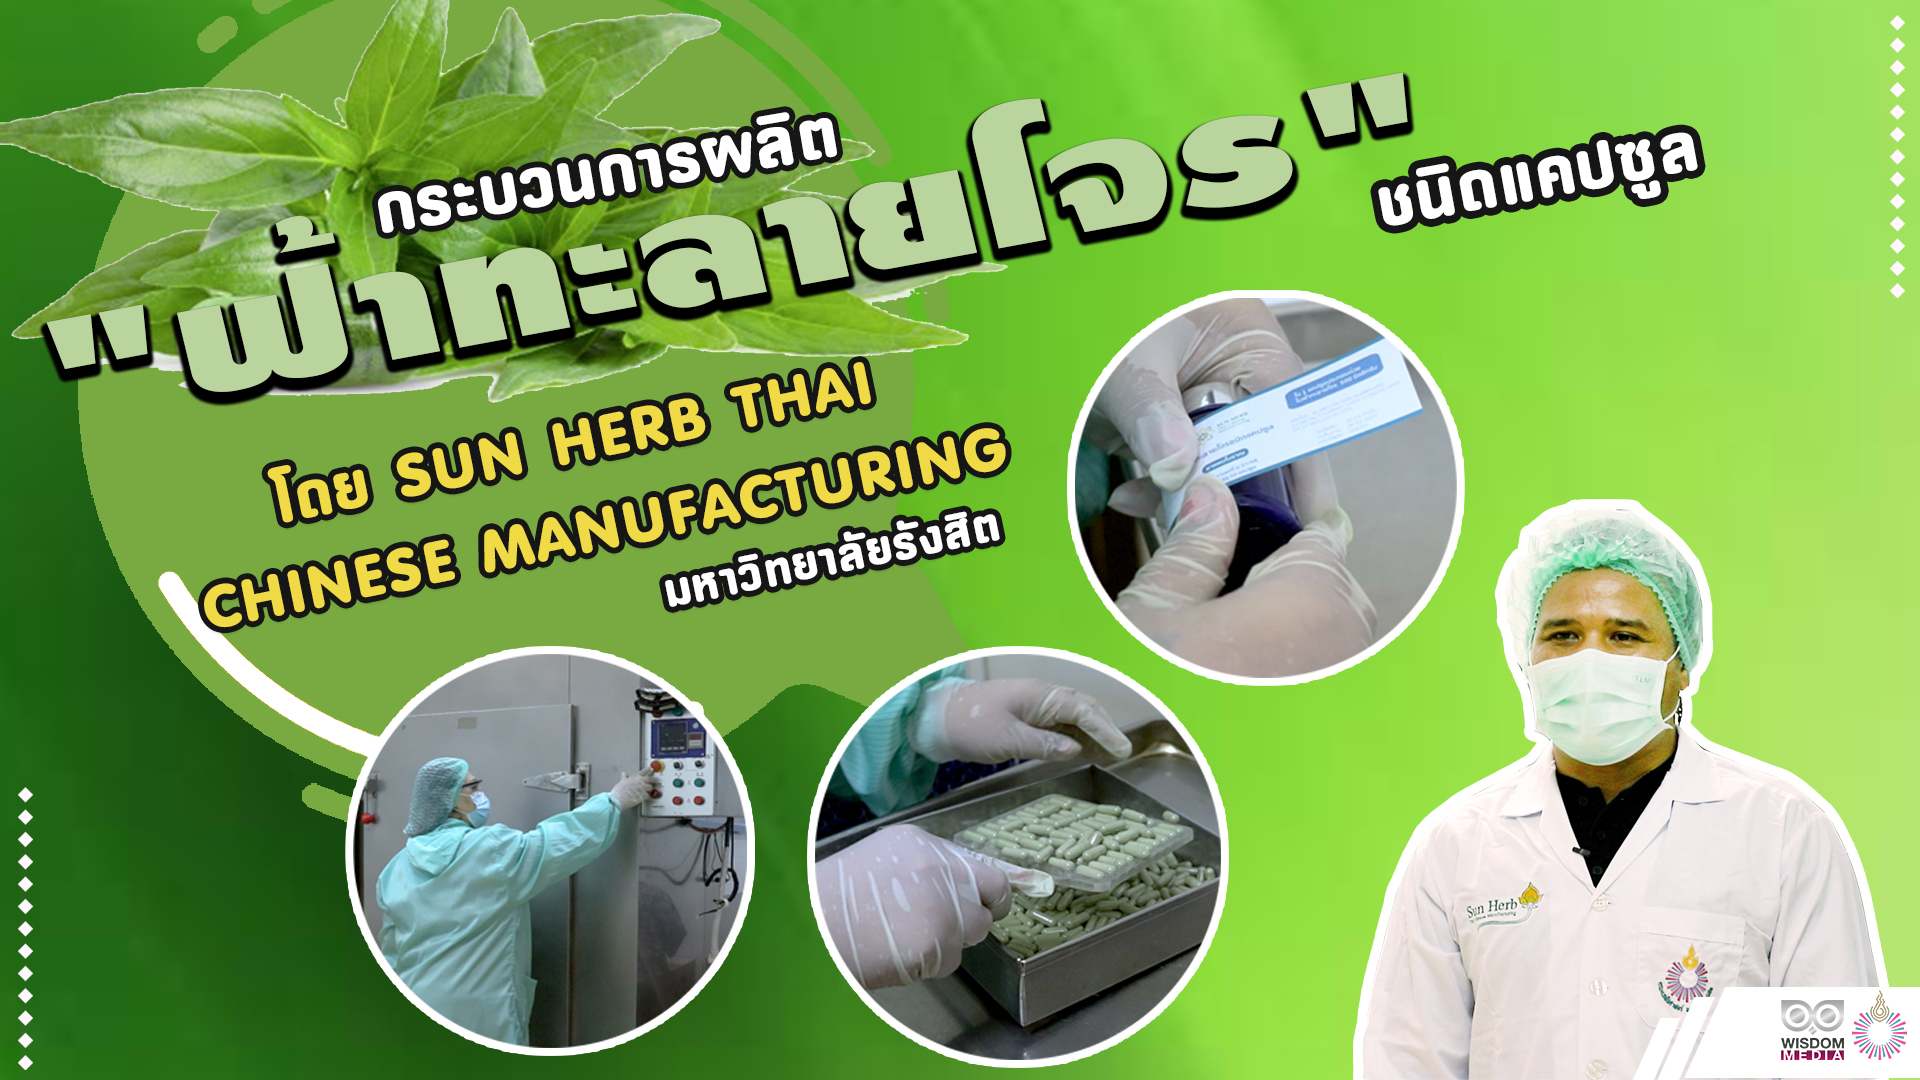 ม.รังสิต ผลิตยา “ฟ้าทะลายโจร” ผลิตโดย Sun Herb Thai Chinese Manufacturing